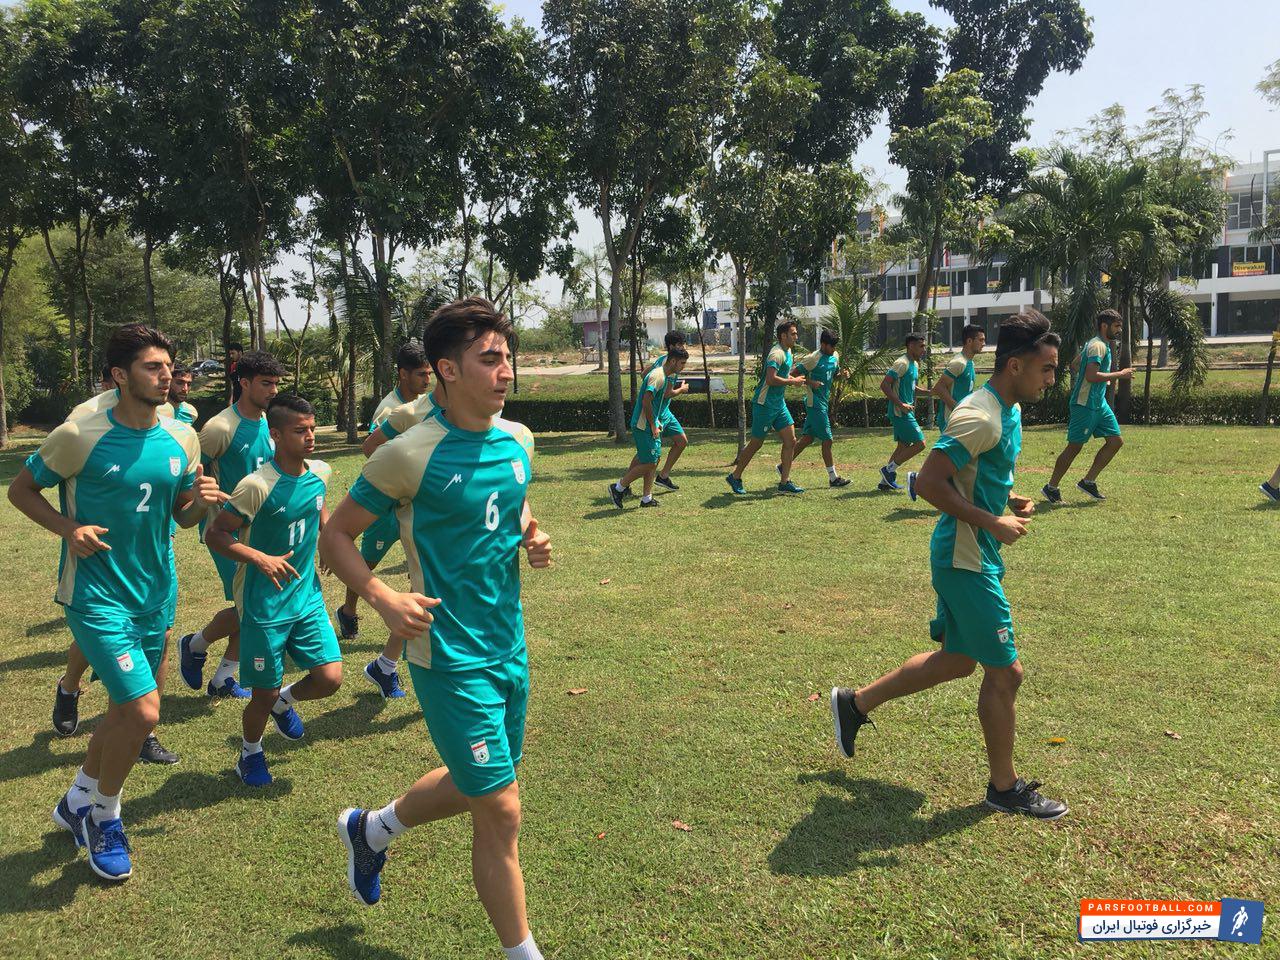 بازیکنان تیم ملی امید به دو دسته تقسیم شدند، نفرات ثابت  تیم ملی امید که در روز مقابل کره شمالی بازی کردند به گوشه ای از زمین رفتند نفرات ذخیره تمرین کردند.